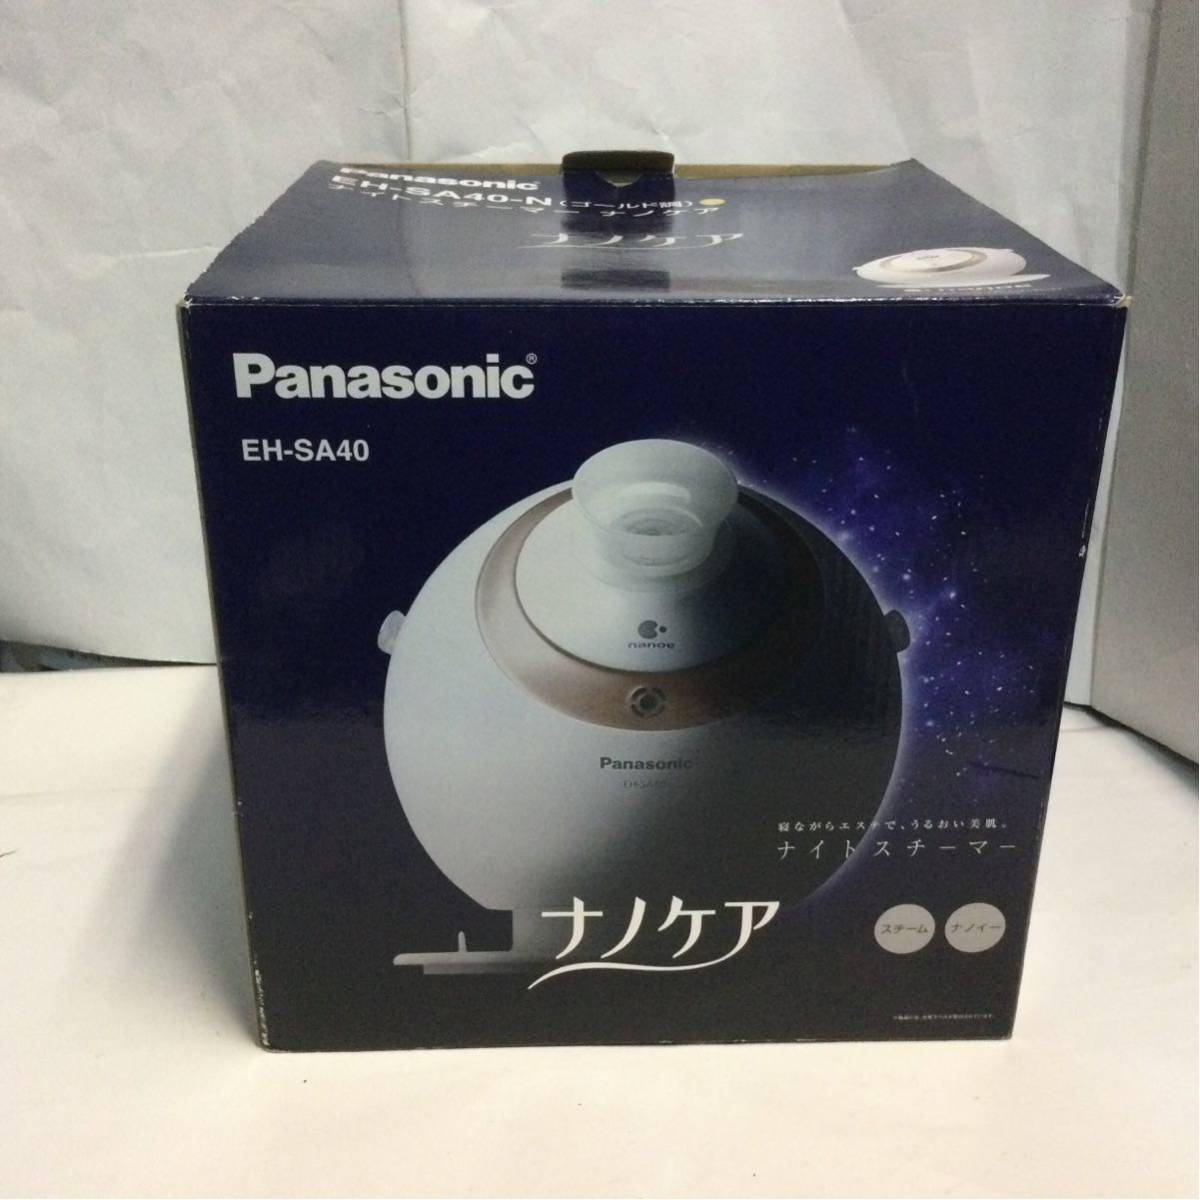 Panasonic ナイトスチーマー ナノケア EH-SA40 パナソニック の商品